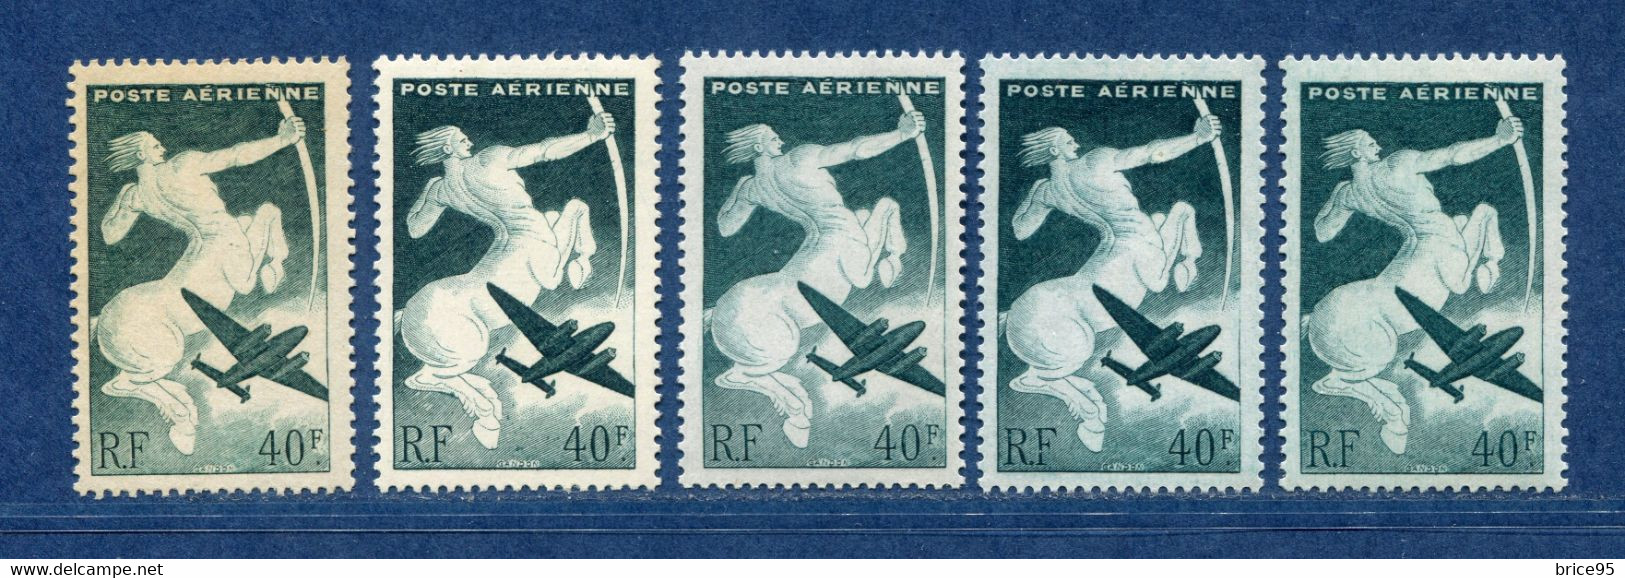 ⭐ France - Variété - YT PA N° 16 - Poste Aérienne - Couleurs - Pétouilles - Neuf Sans Charnière - 1946 ⭐ - Nuevos